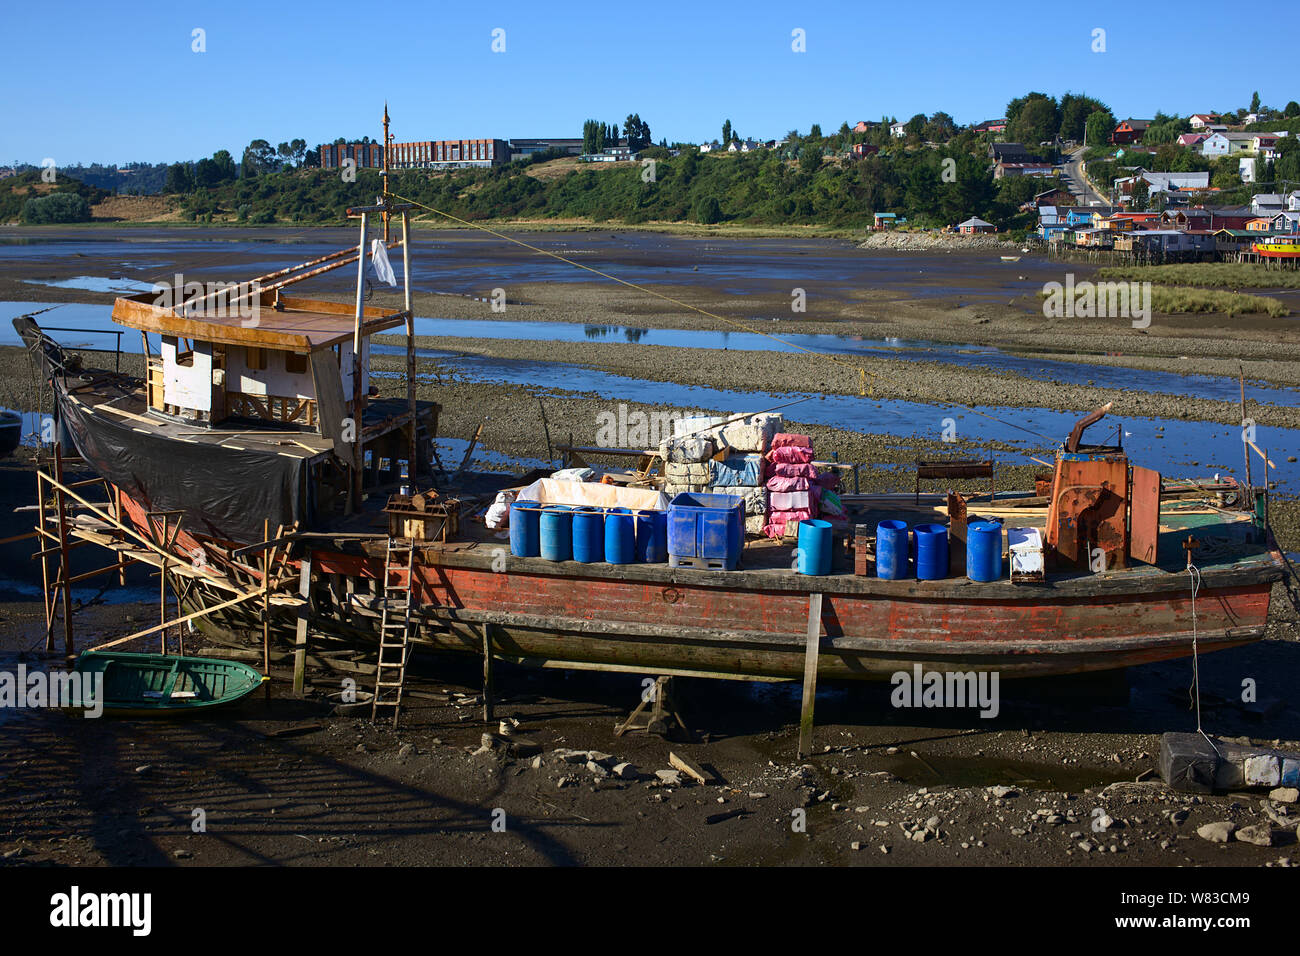 CASTRO, CHILE - Februar 6, 2016: Alte hölzerne Schiff bei Ebbe im Flussbett des Gamboa Fluss in Castro, Chiloé Archipel in Chile Stockfoto